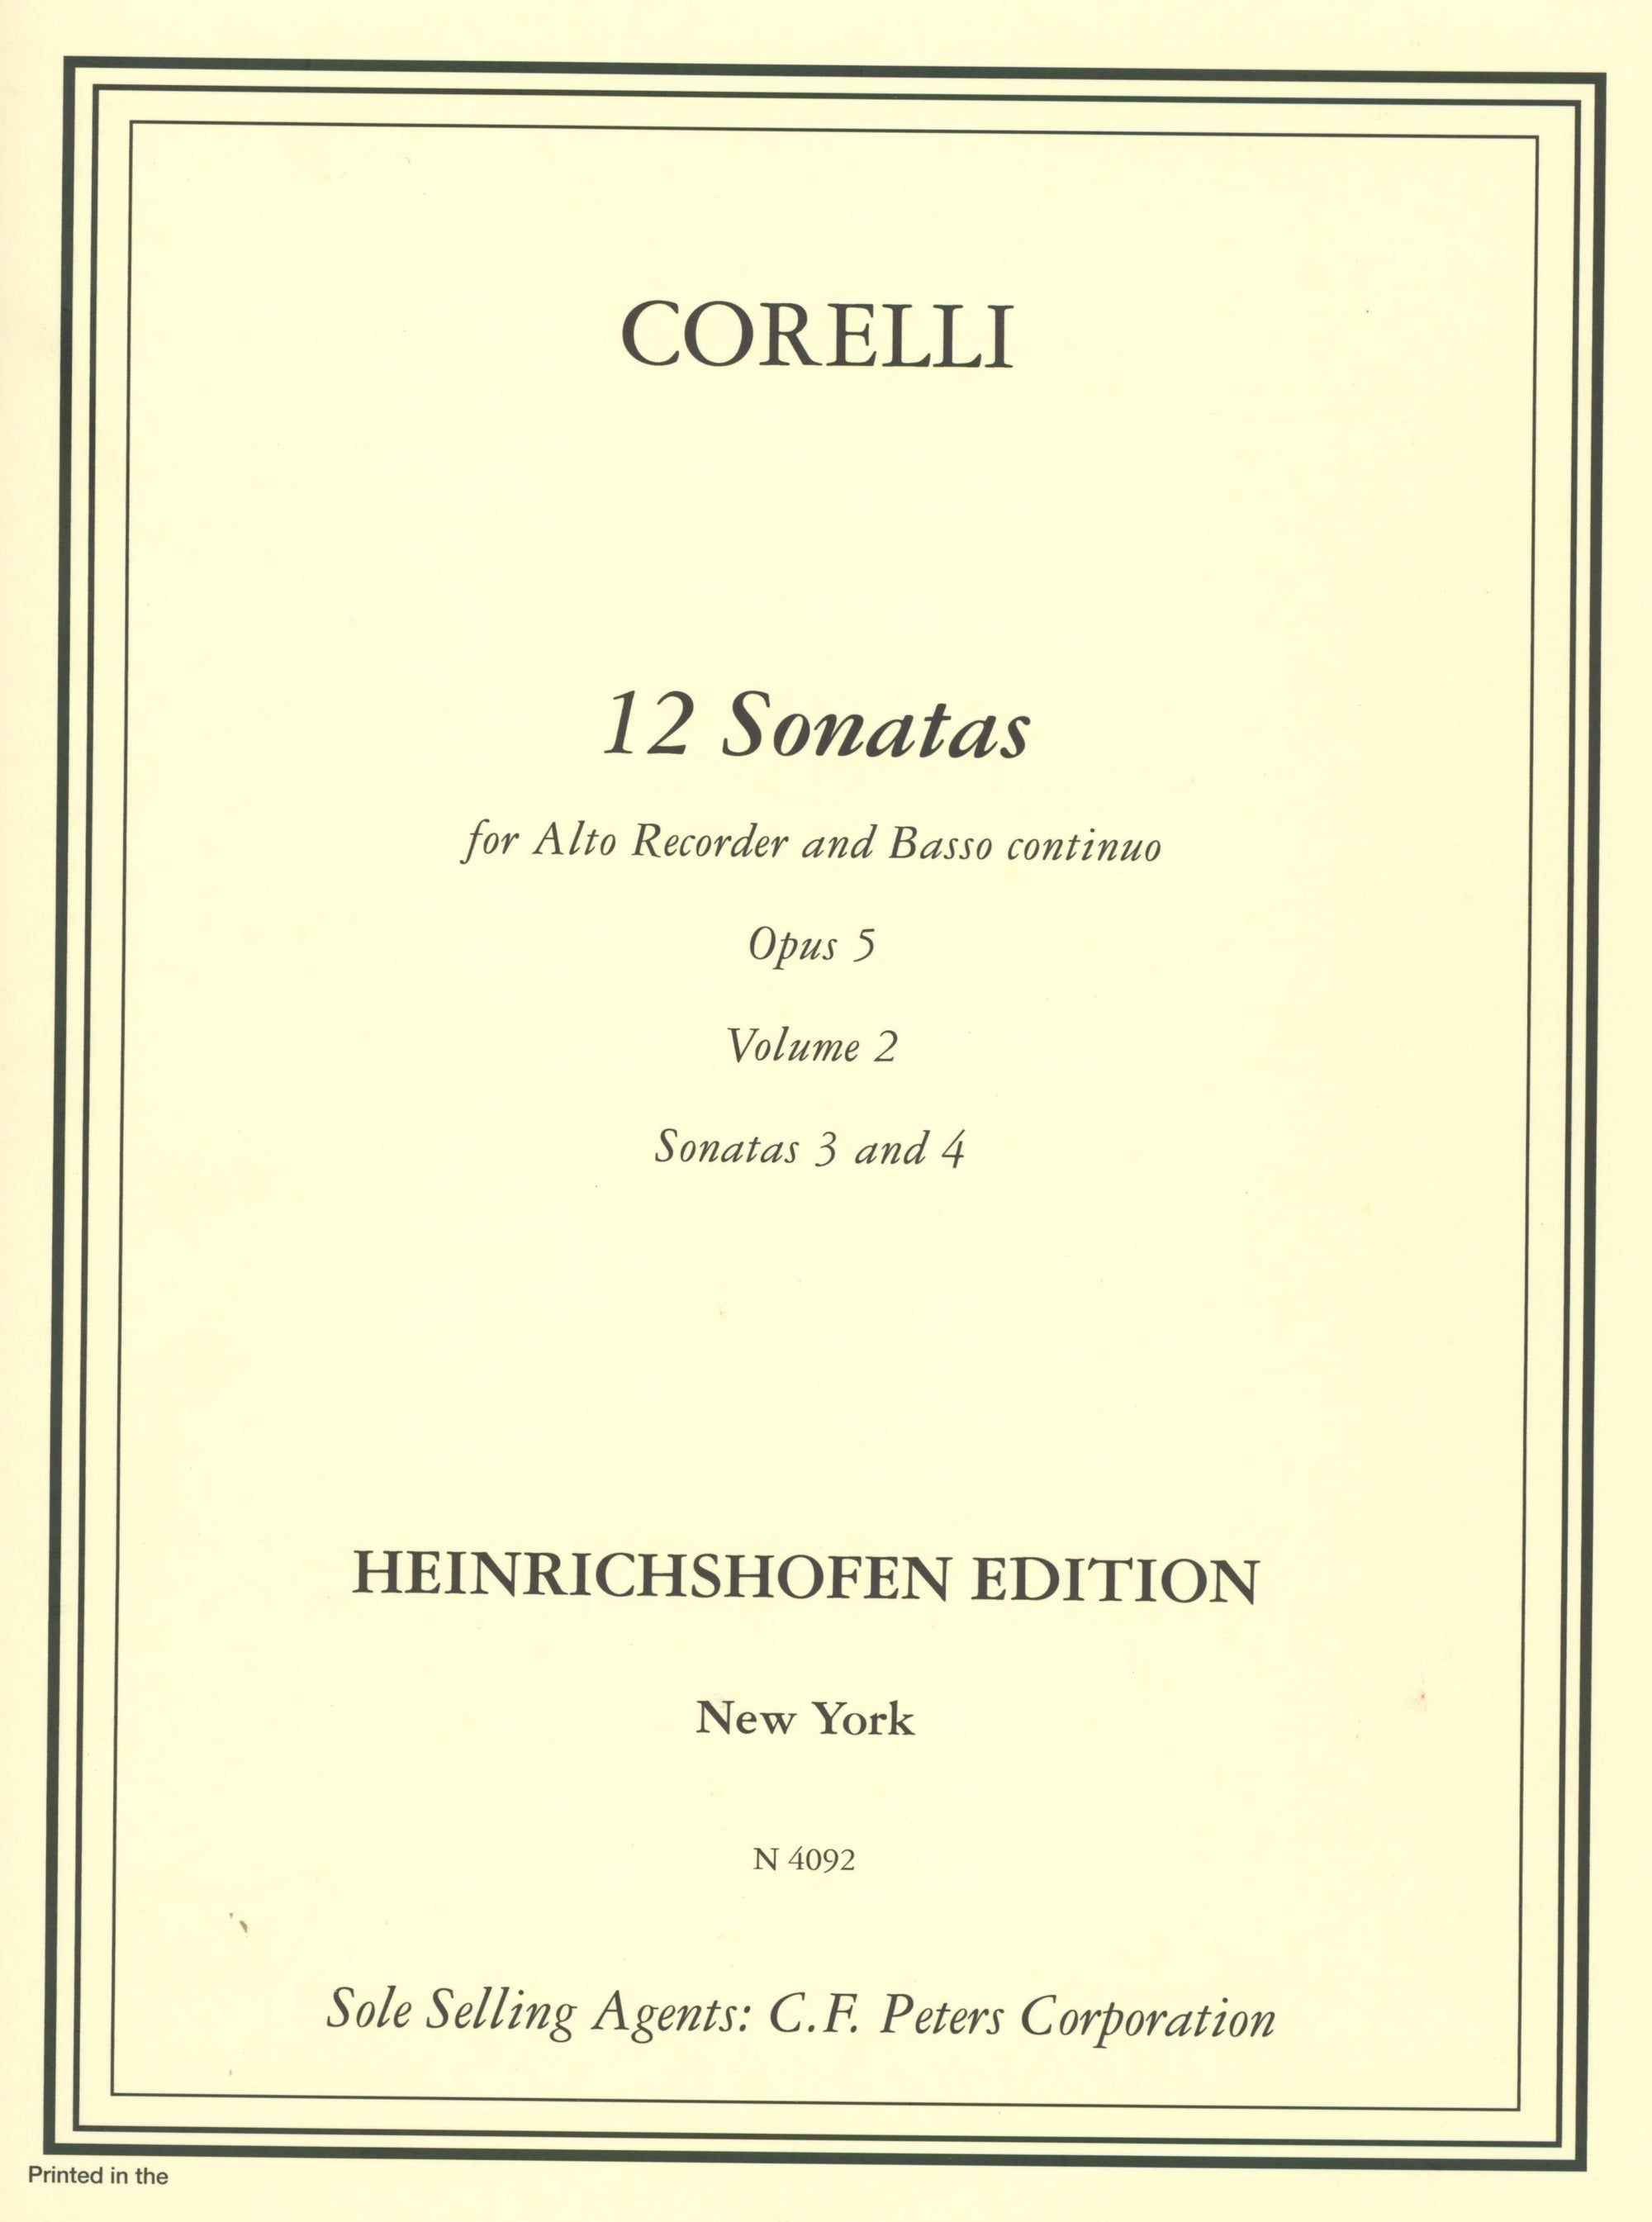 Corelli: Sonatas, Op. 5, Nos. 3 & 4 (arr. for alto recorder & continuo)